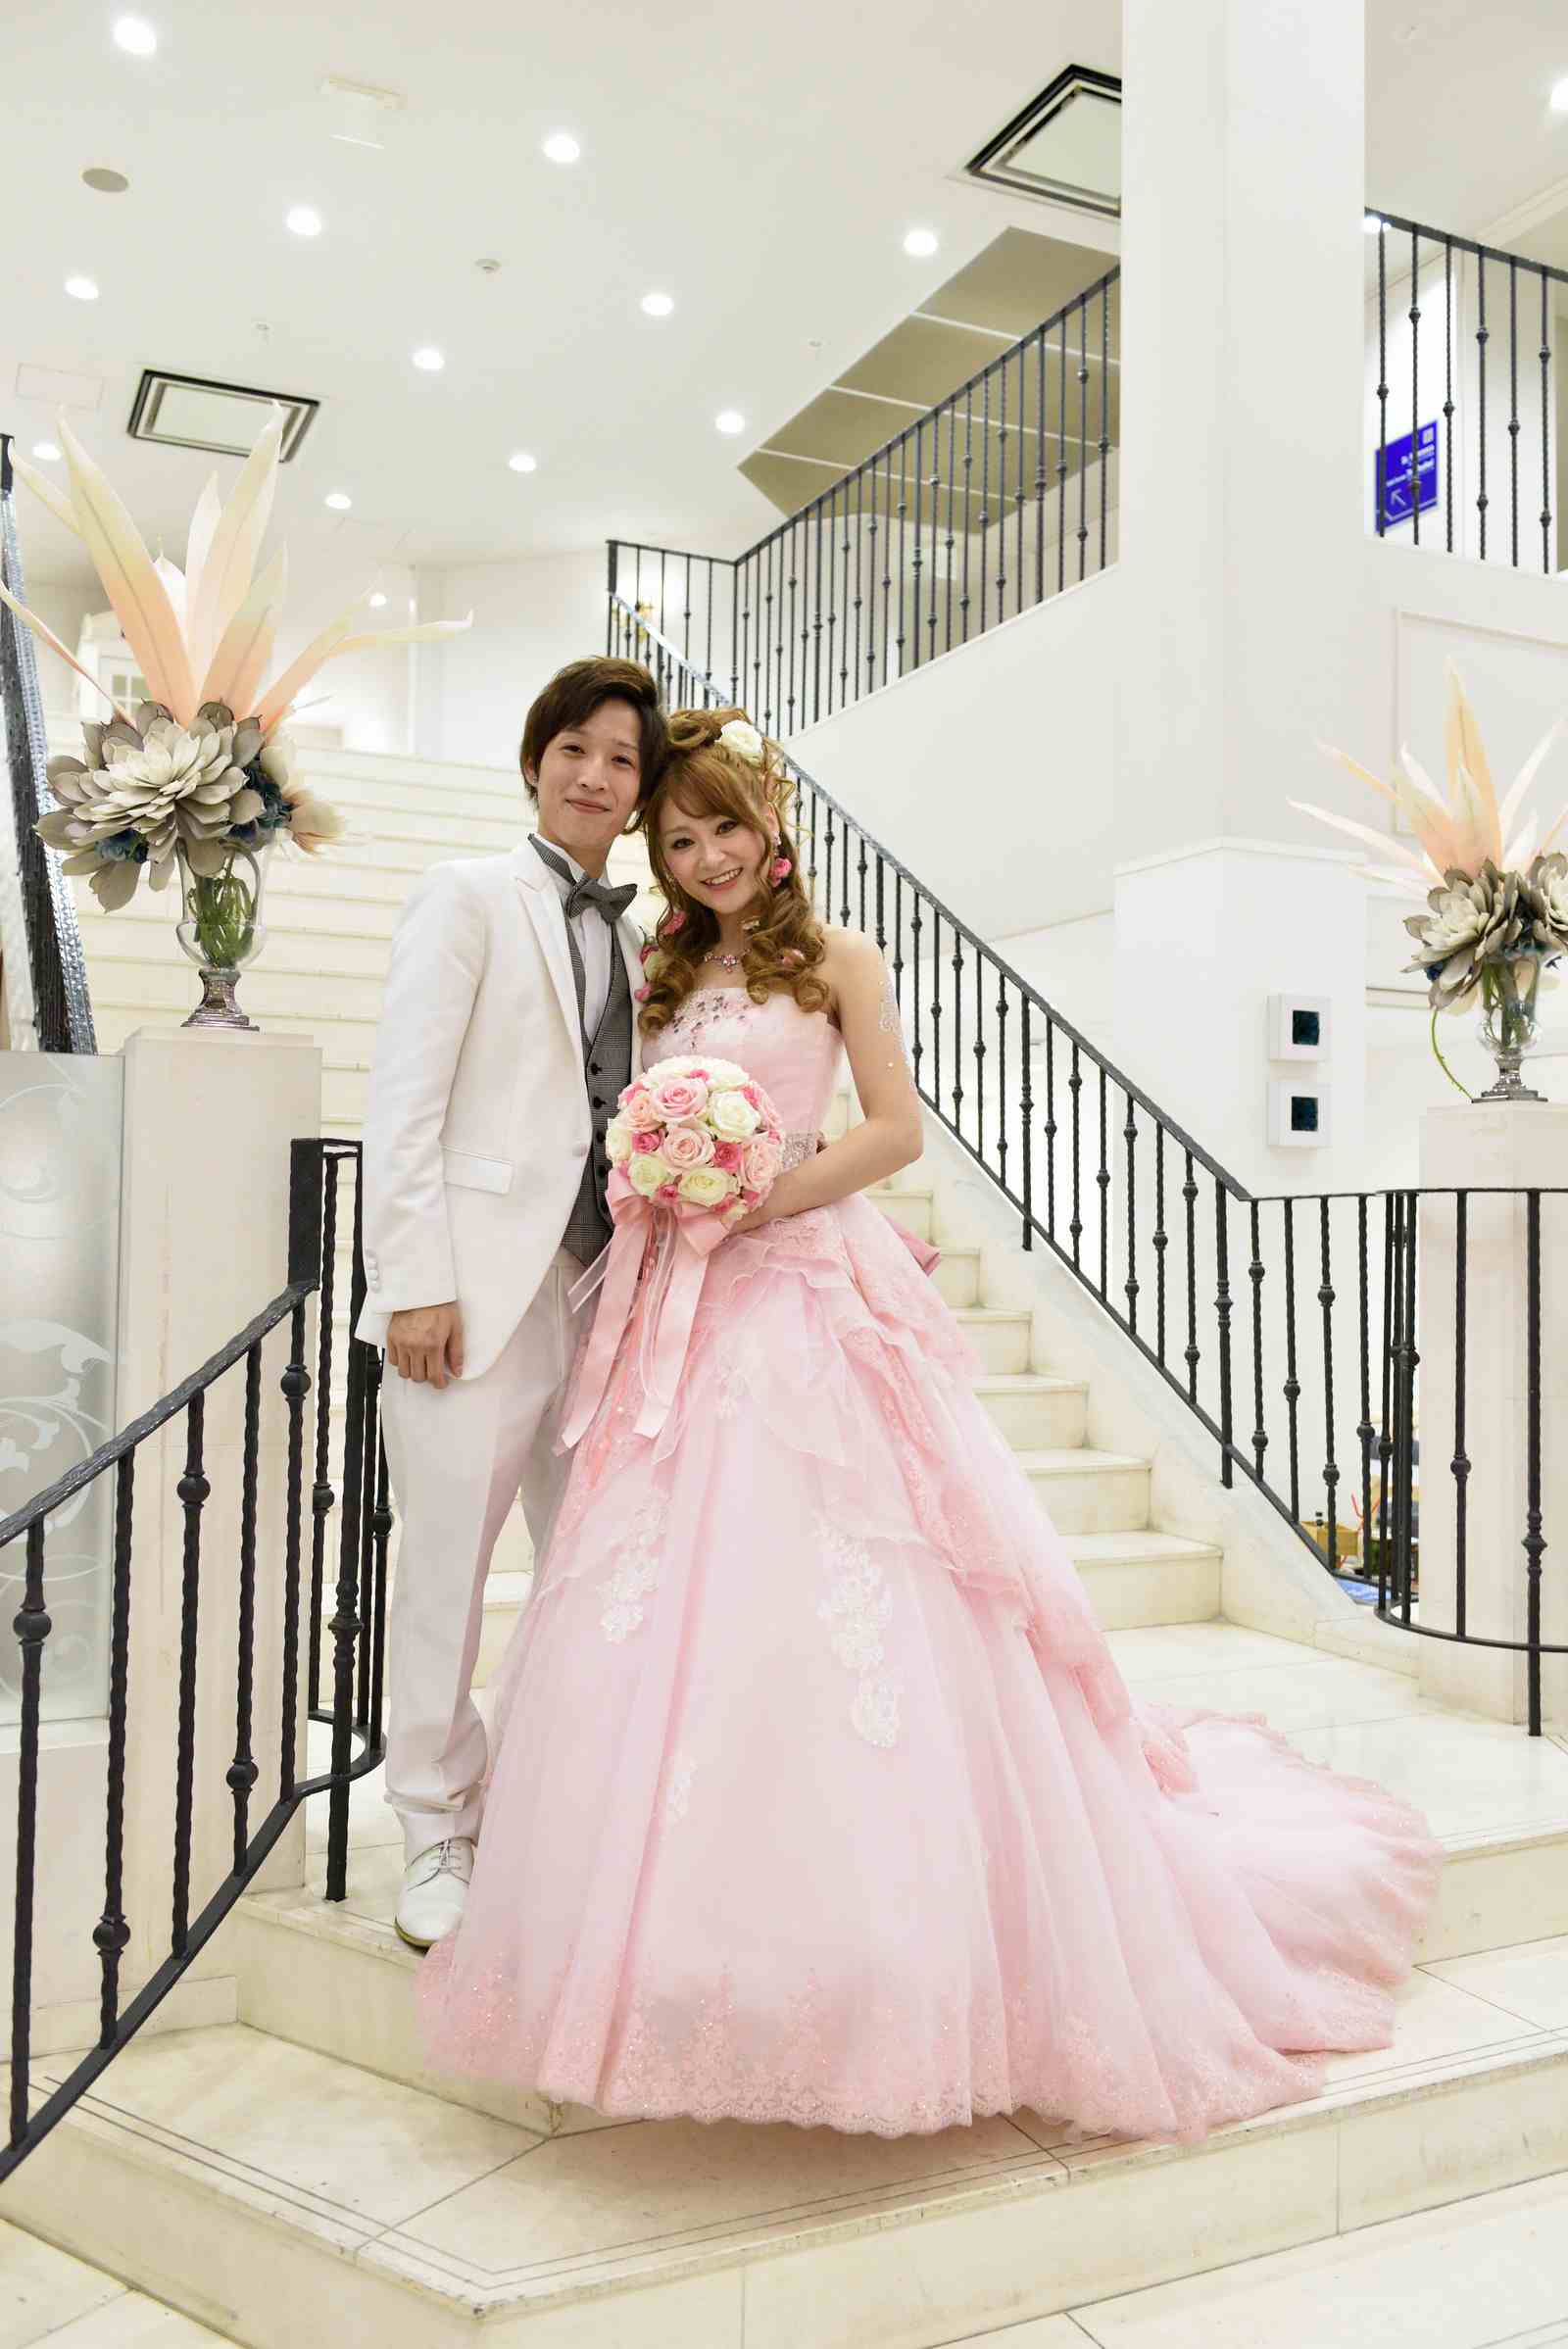 大好きなもので溢れたオリジナル結婚式 宇多津 香川 の結婚式場ならシェルエメール アイスタイル